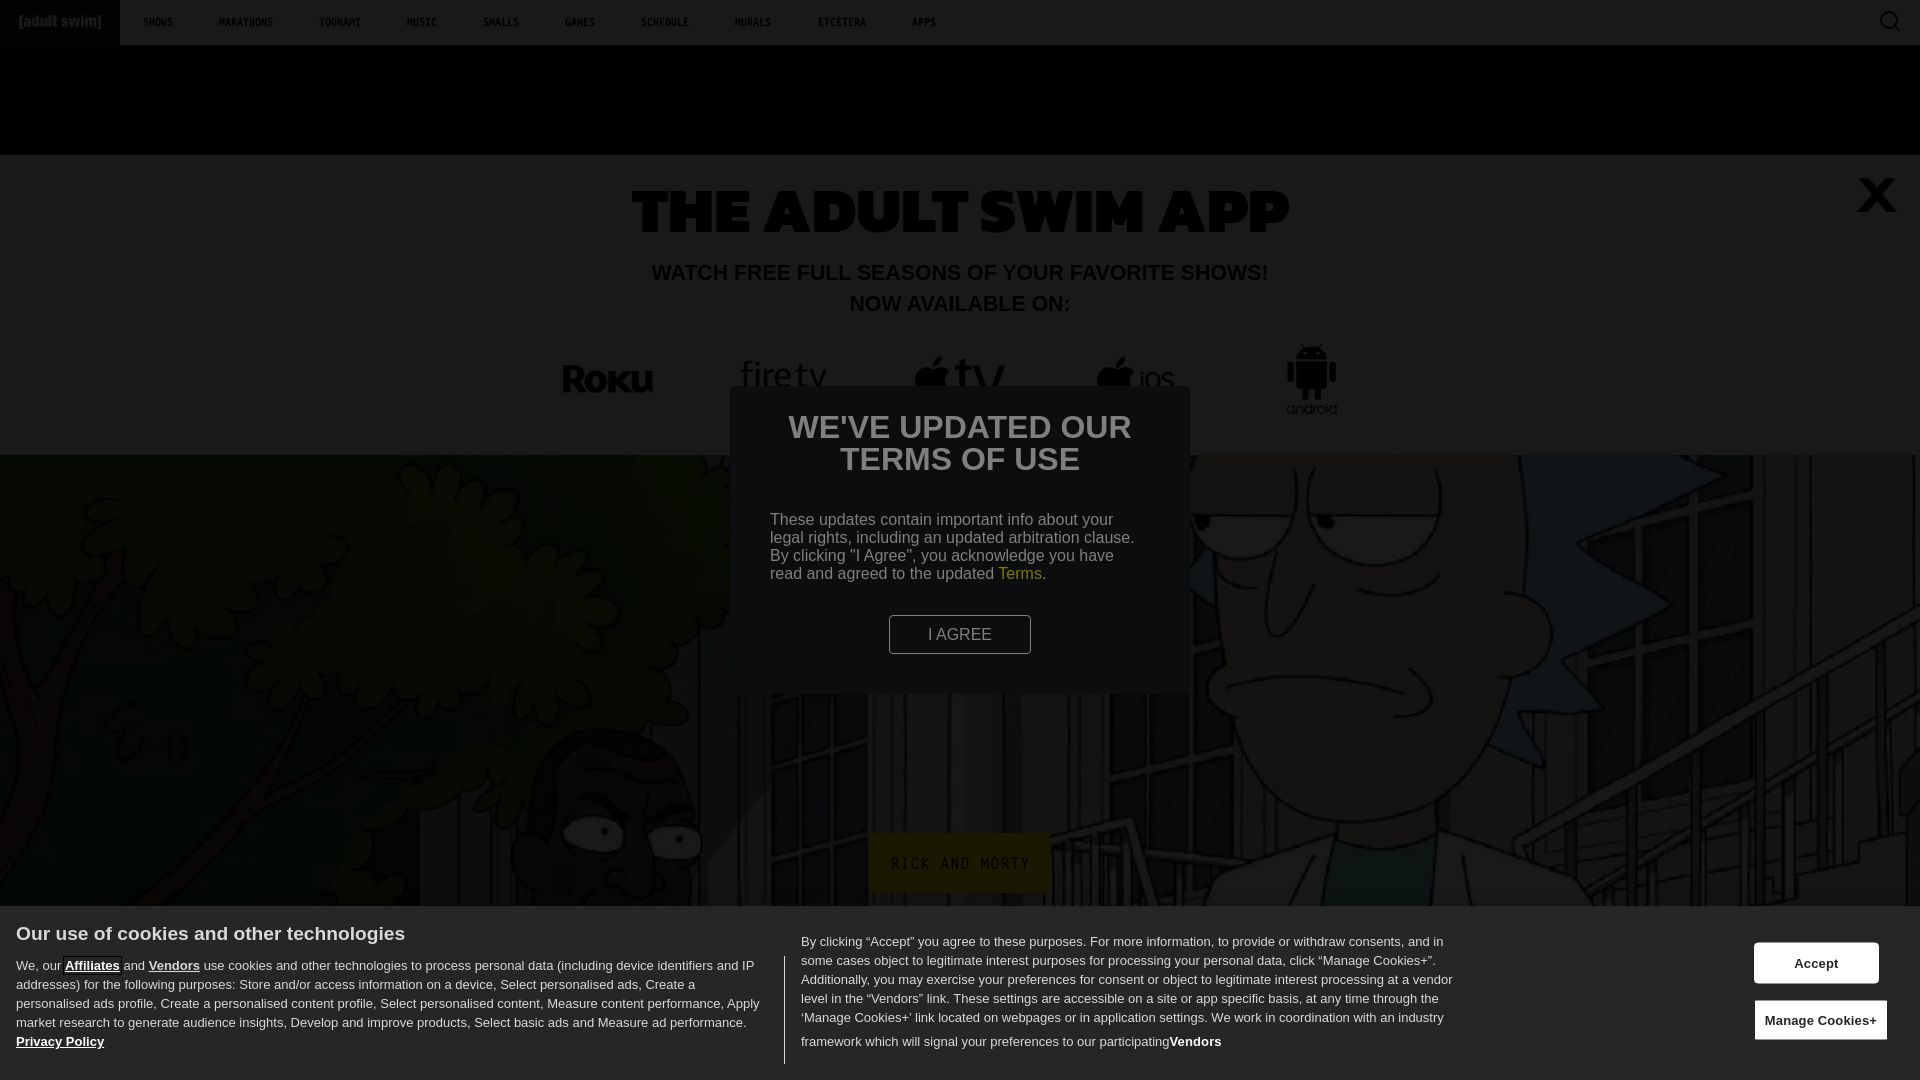 Estado web adultswim.com está   ONLINE